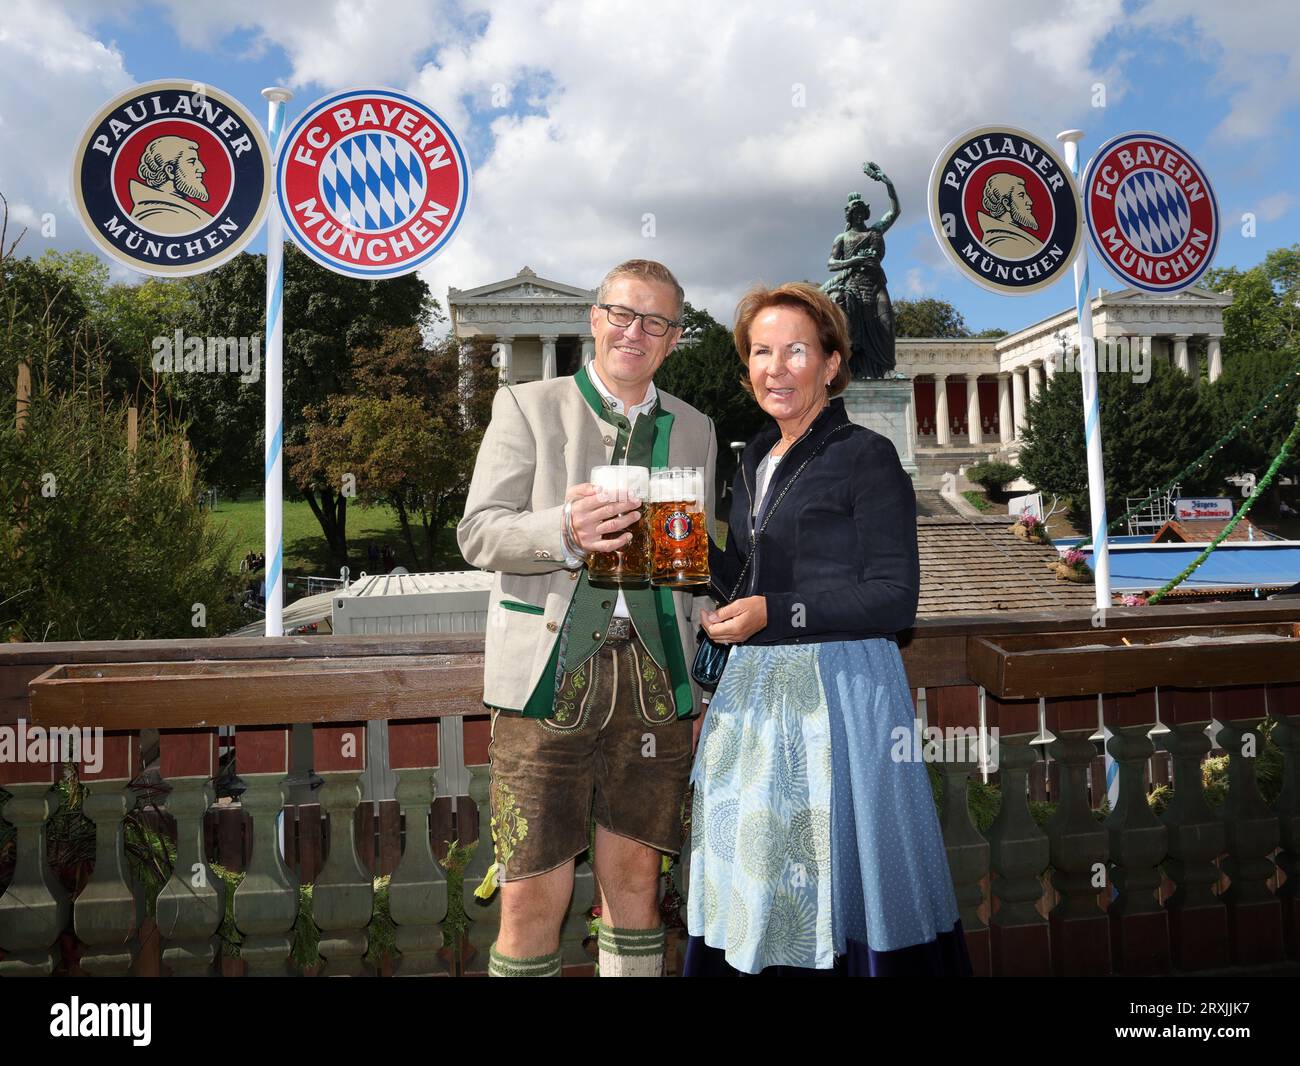 Bayern Bier Flagge Bayerische Staat Bayern Flagge Bier München Oktoberfest  bayrisch Stockfotografie - Alamy